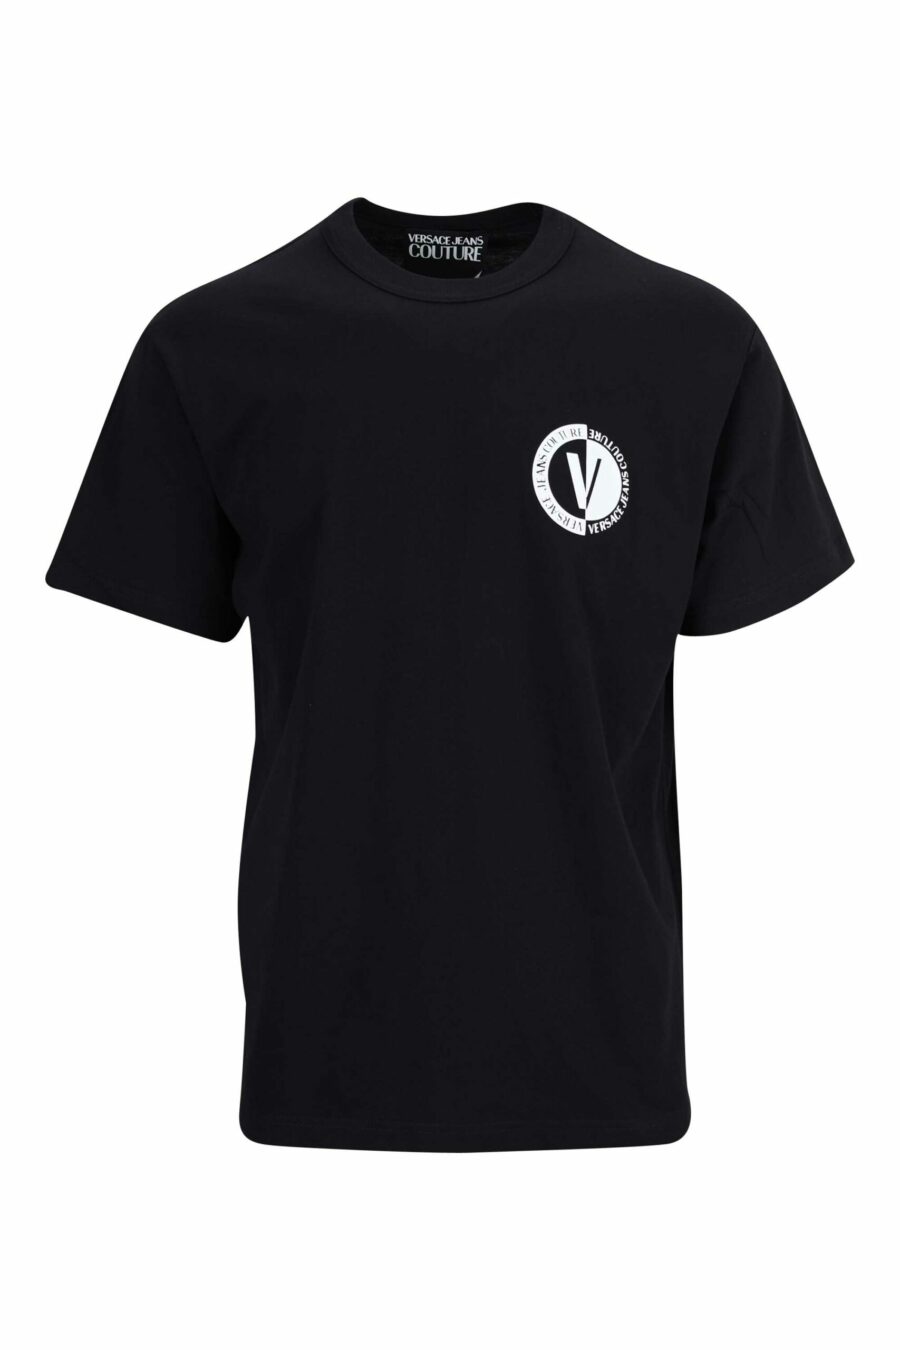 T-shirt noir avec mini-logo circulaire contrasté - 8052019471700 scaled